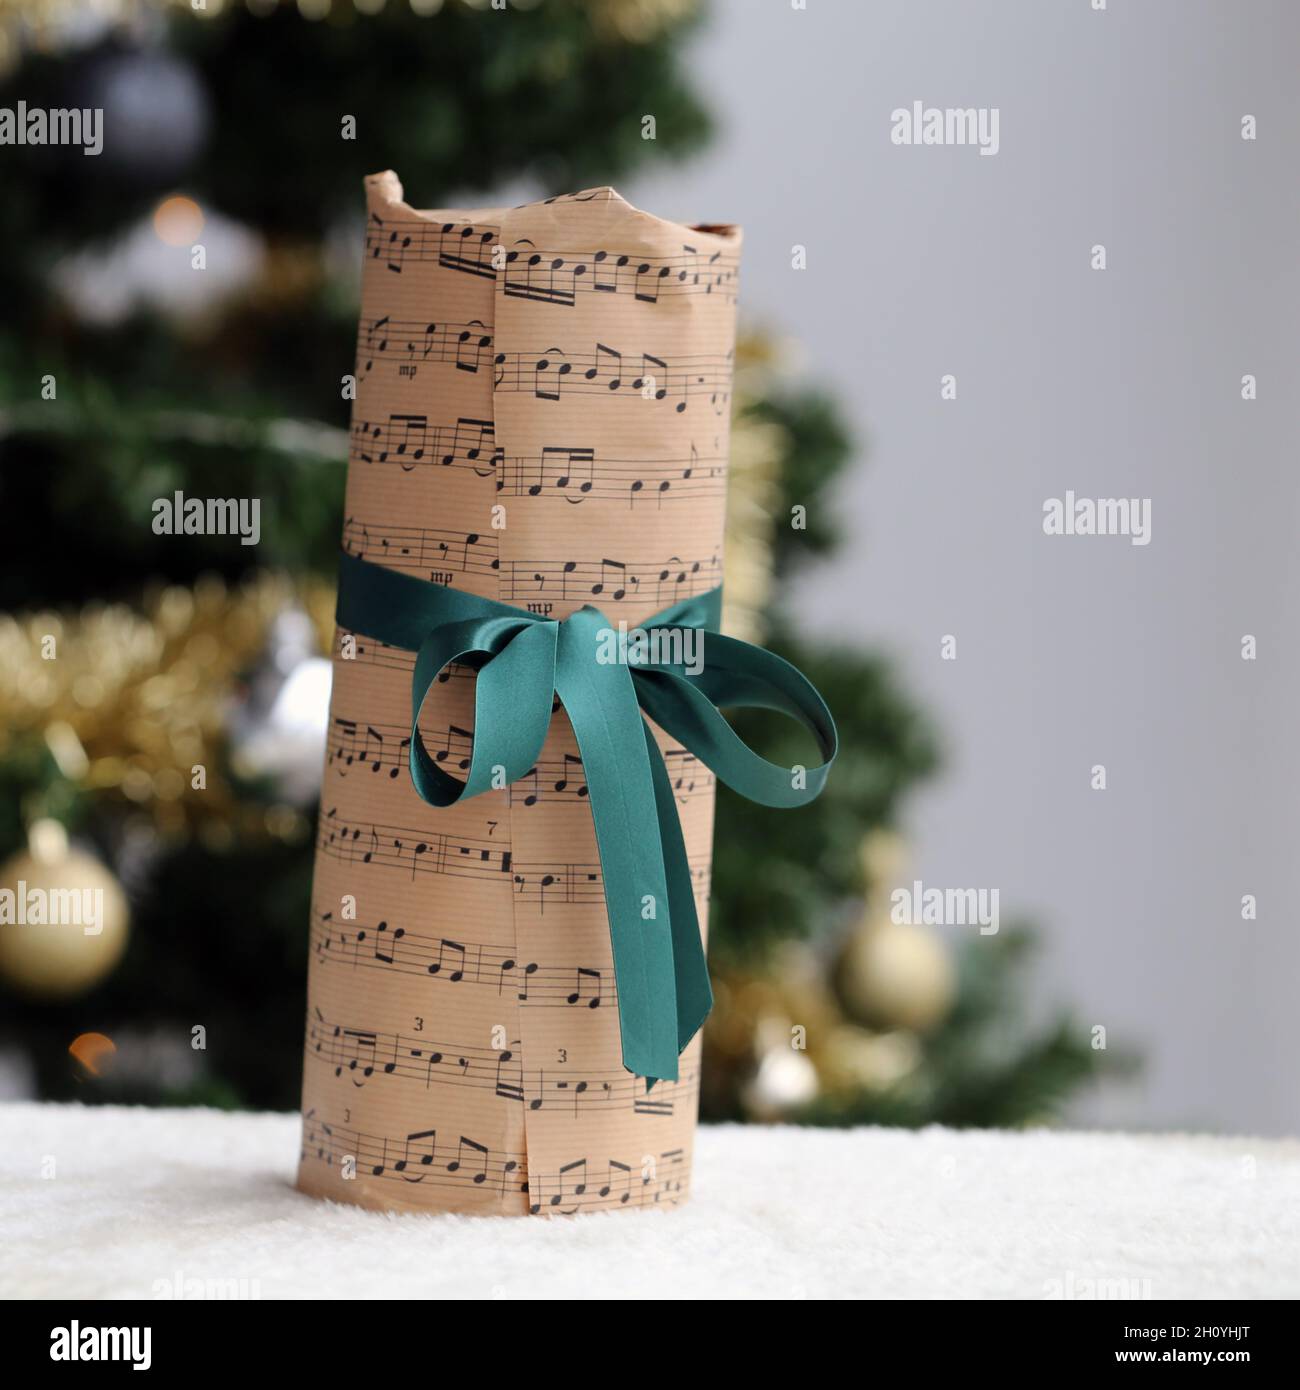 Hermoso regalo de Navidad decorado con música y notas de papel temático y cinta verde satinada. El presente fue fotografiado con un árbol de Navidad. Foto de stock